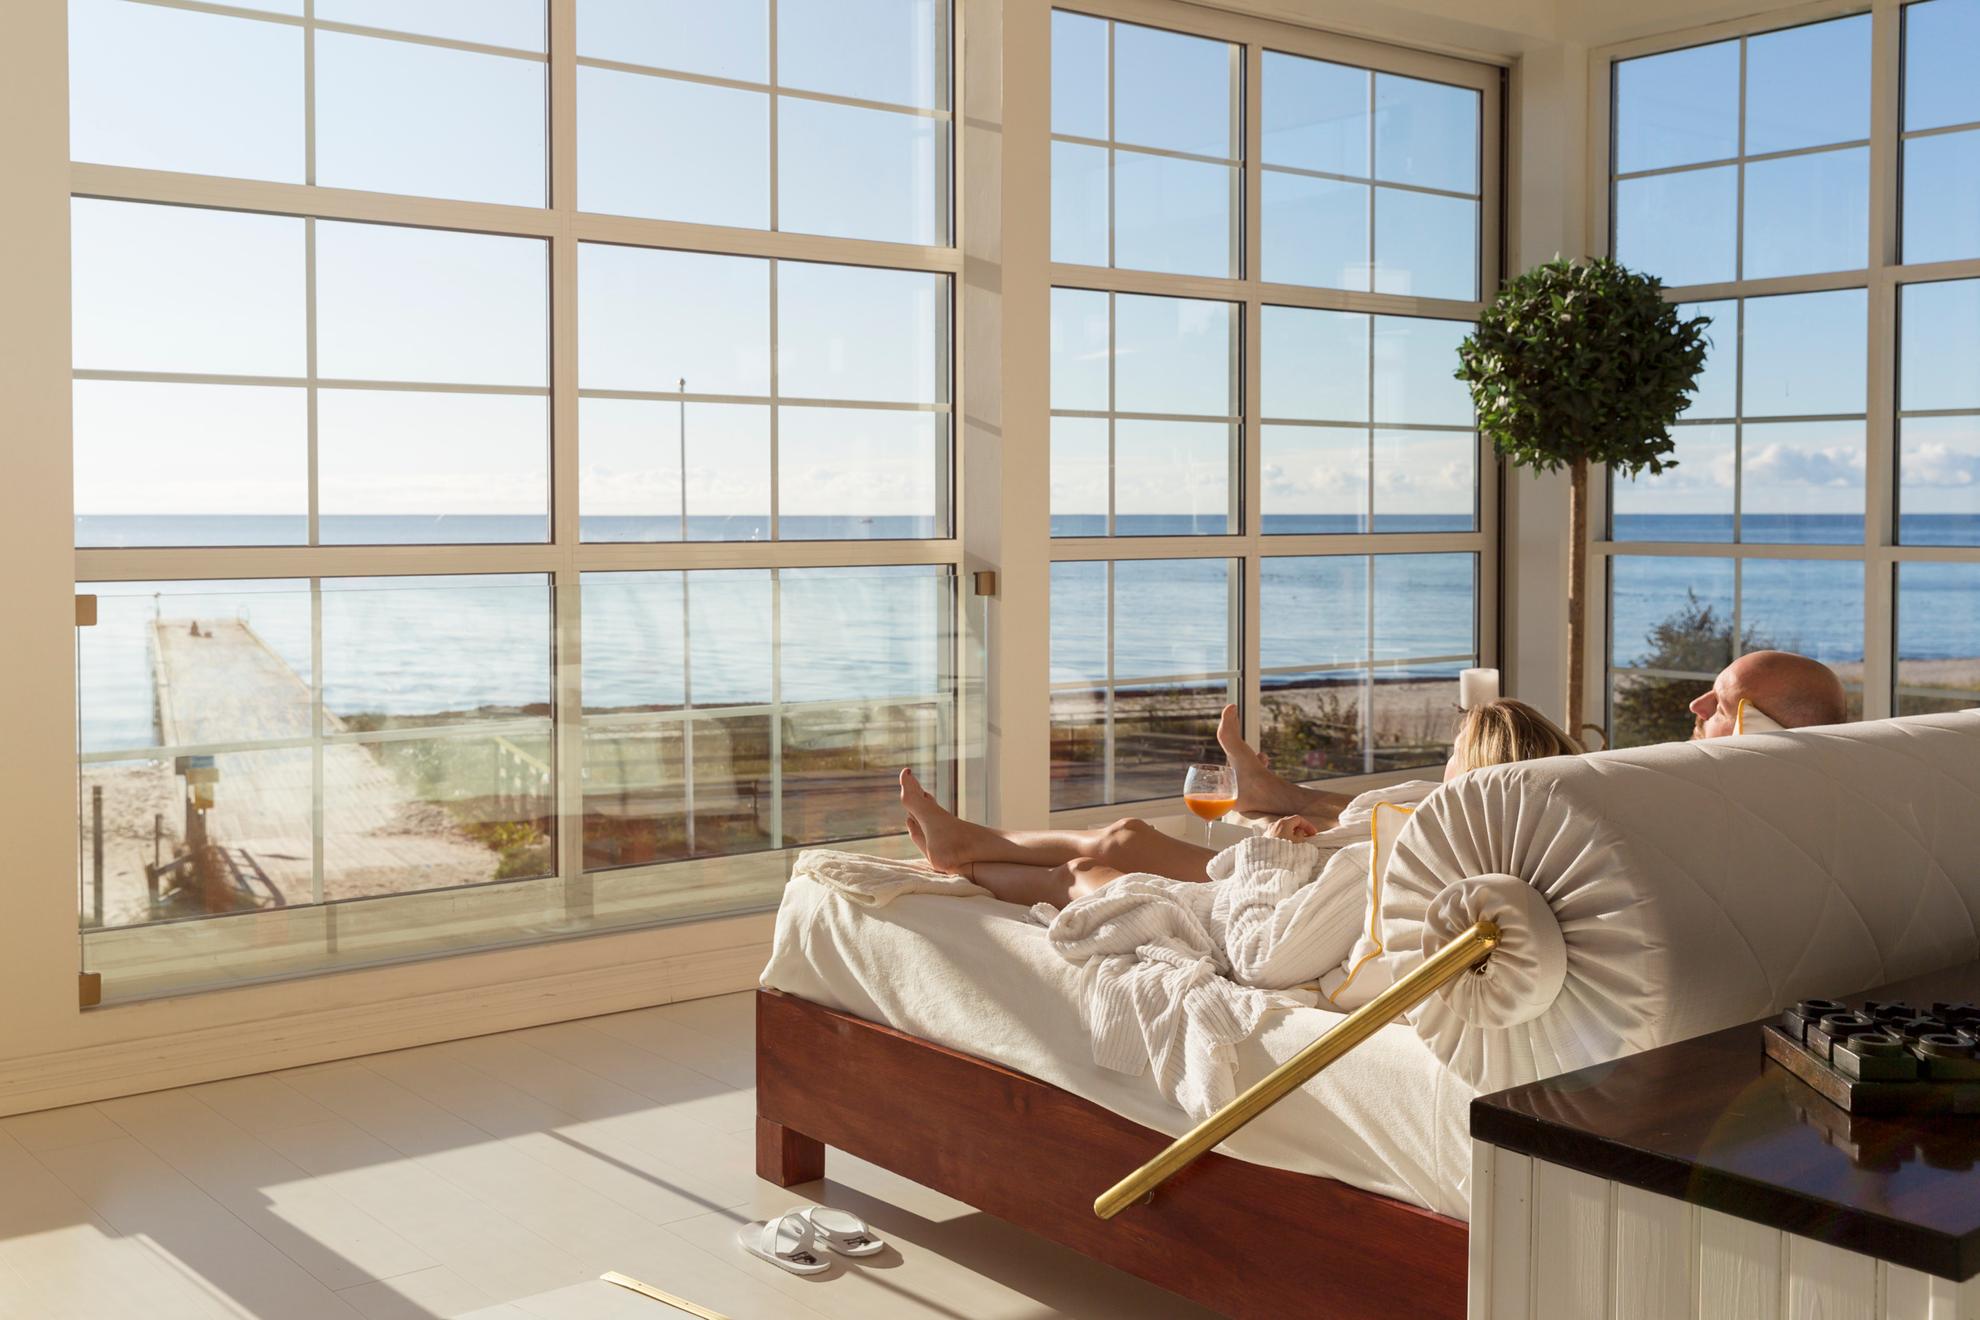 Un couple est allongé dans un grand lit à côté de grandes fenêtres donnant sur la plage et la mer.